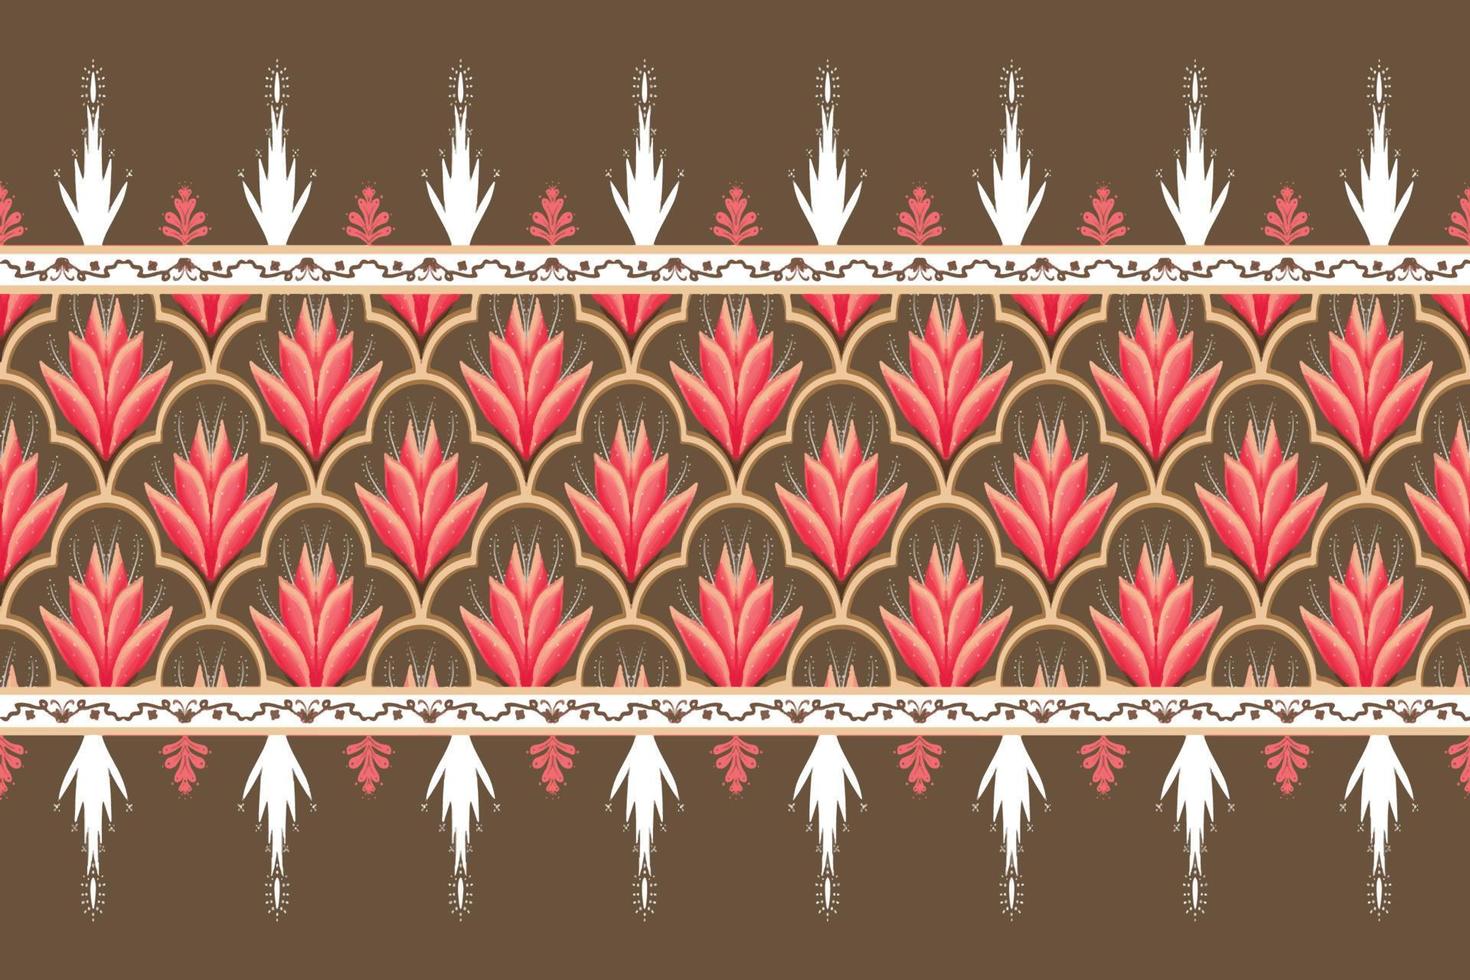 roze bloem op bruin, wit geometrische etnische oosterse patroon traditioneel ontwerp voor achtergrond, tapijt, behang, kleding, verpakking, batik, stof, vector illustratie borduurstijl